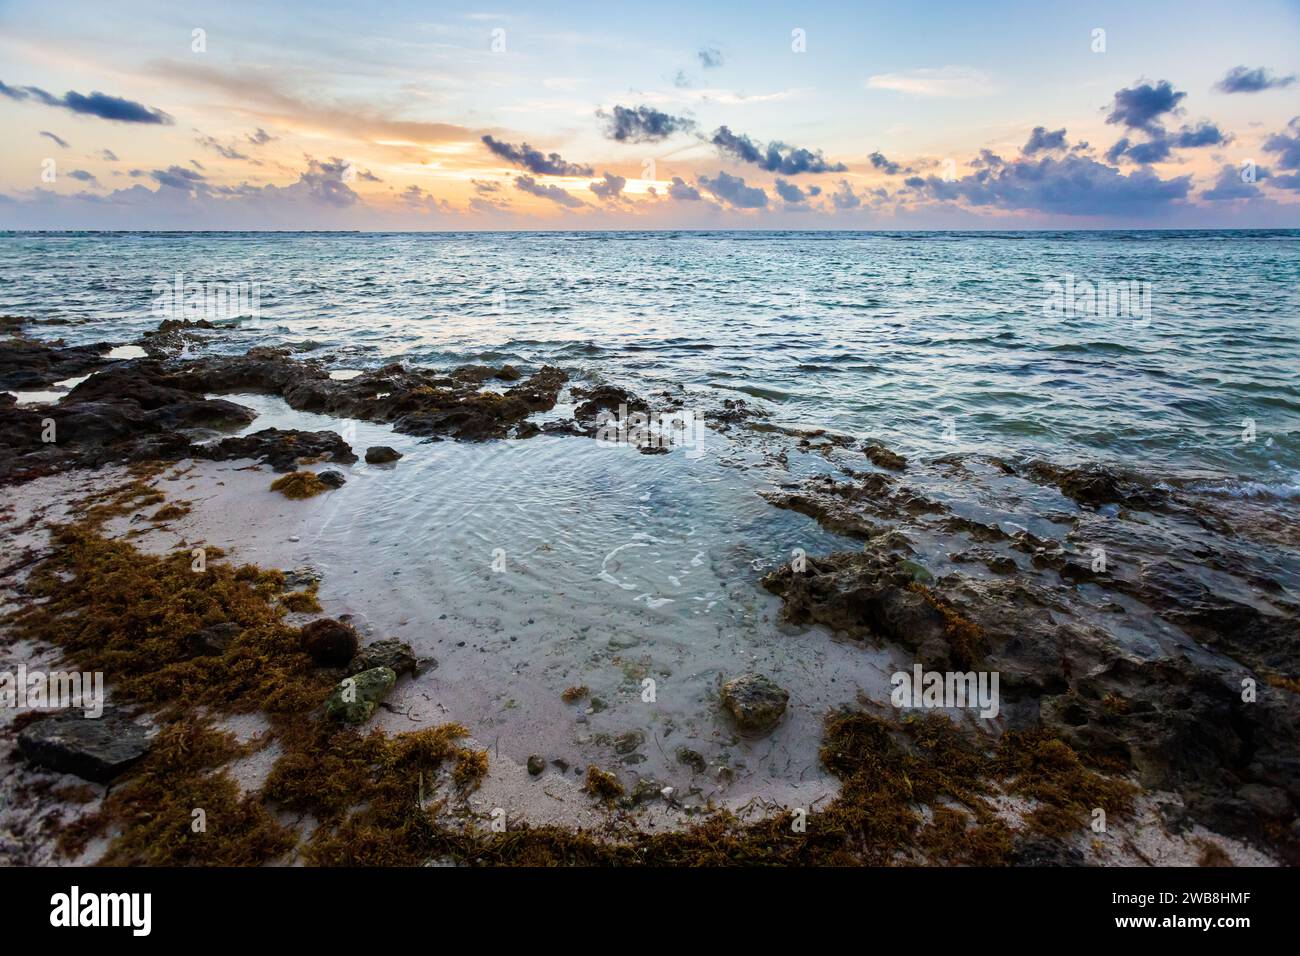 Splendida foto del paesaggio caraibico scattata nella spiaggia di Mahahual in Messico durante l'alba Foto Stock